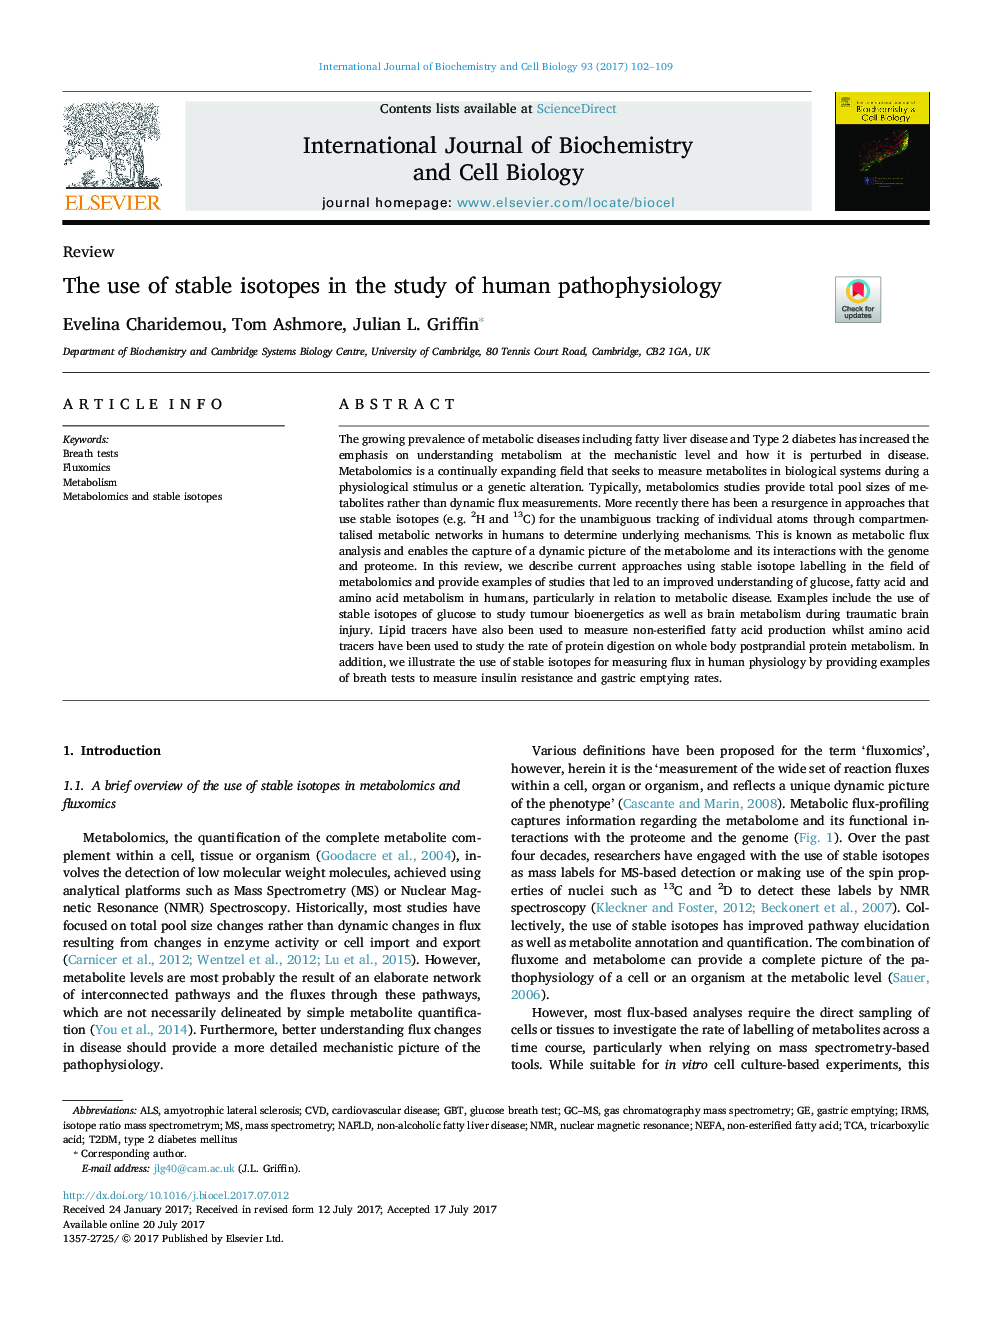 استفاده از ایزوتوپهای پایدار در مطالعه پاتوفیزیولوژی انسان 